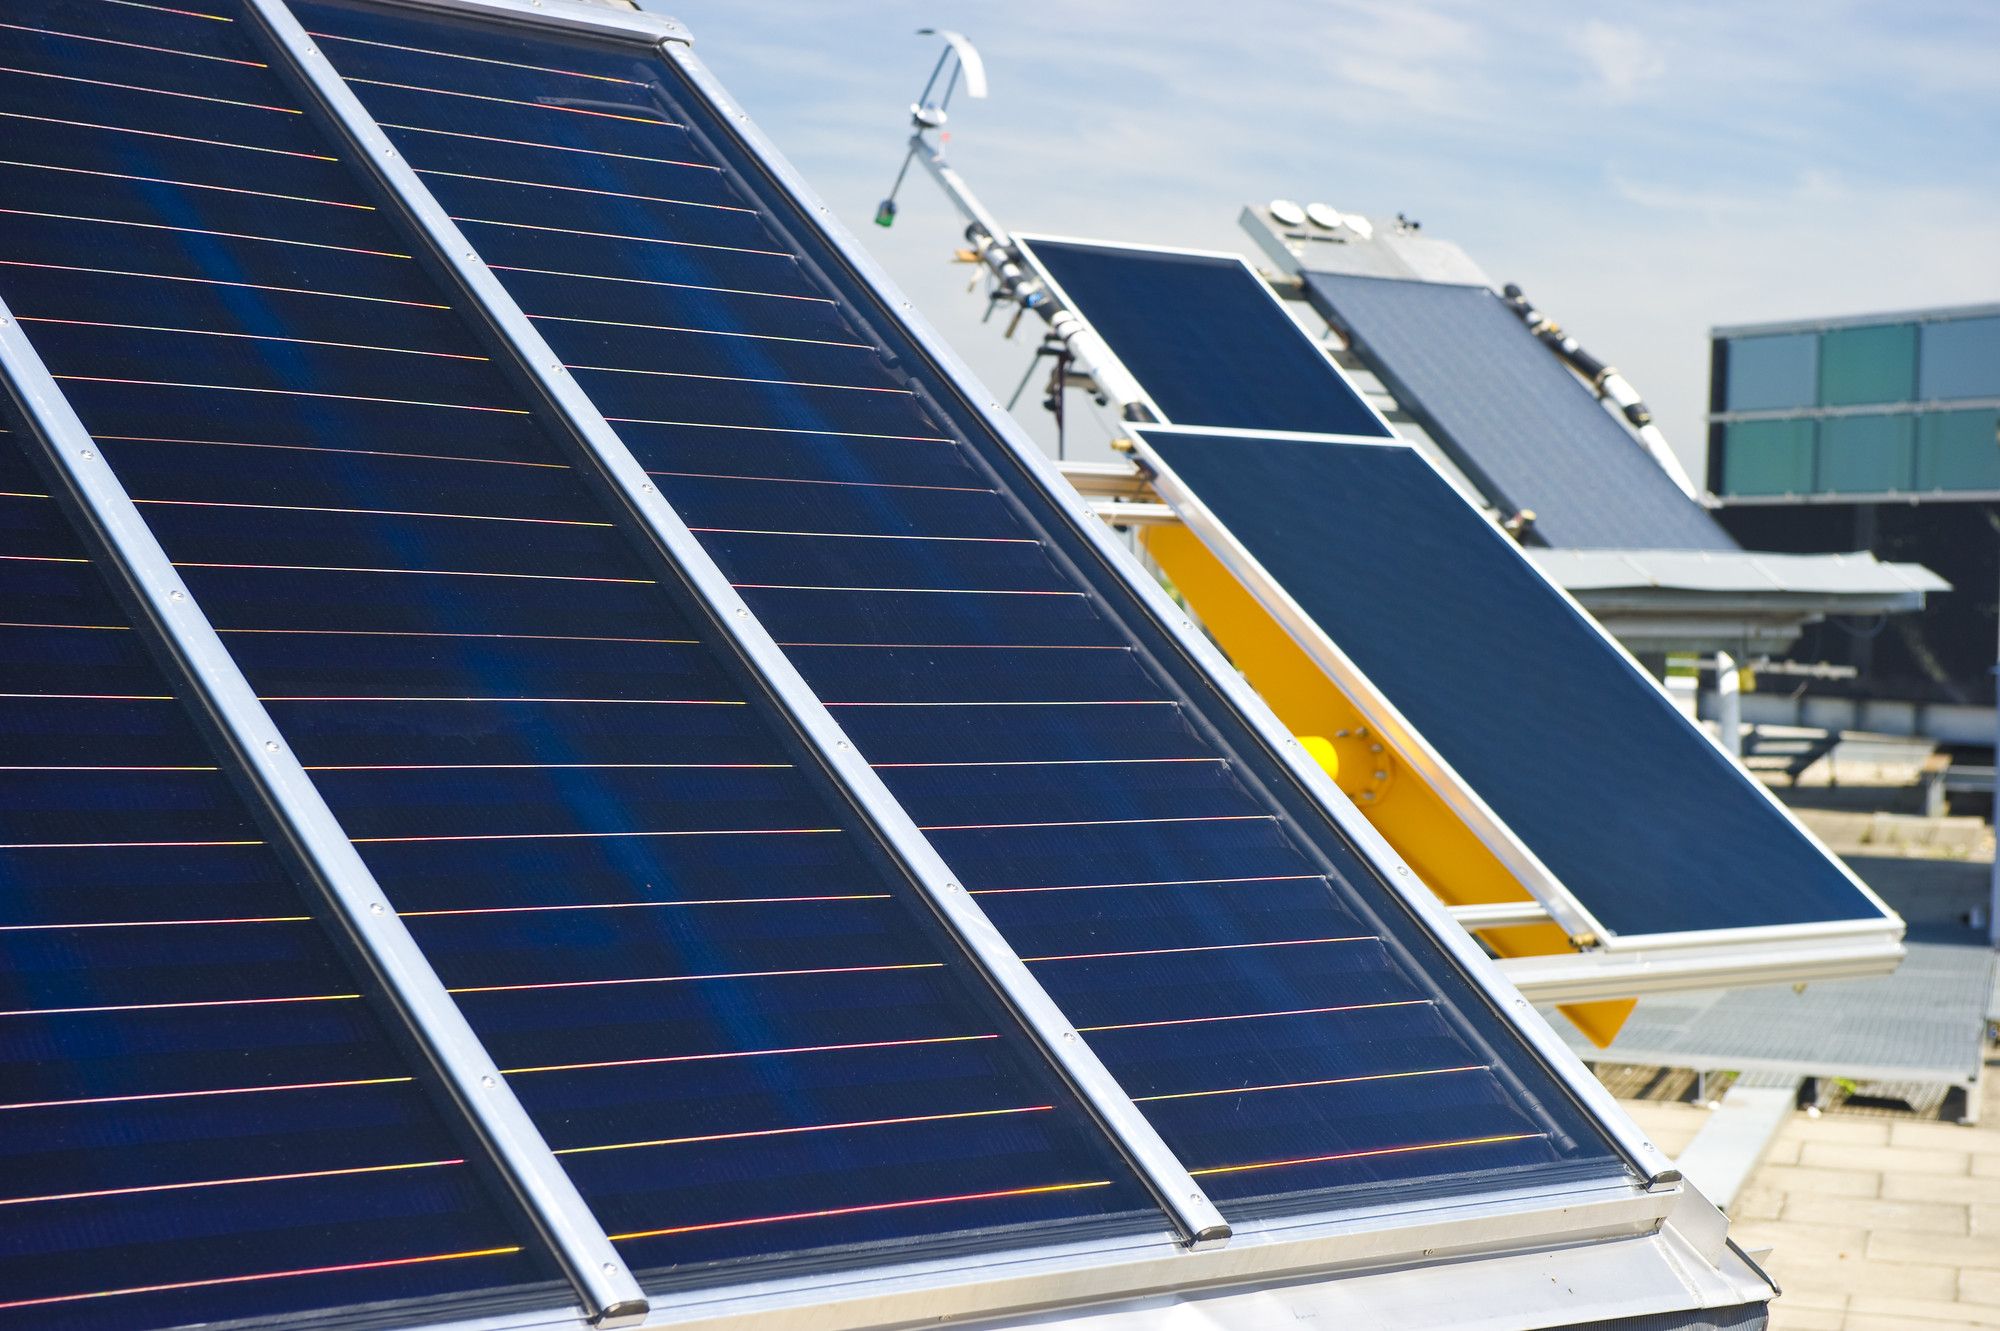 Außenteststand des TestLab Solar Thermal Systems am Fraunhofer ISE. Die Experten des Testlabors haben bereits weit über 500 Kollektoren und Anlagen vermessen und charakterisiert. 